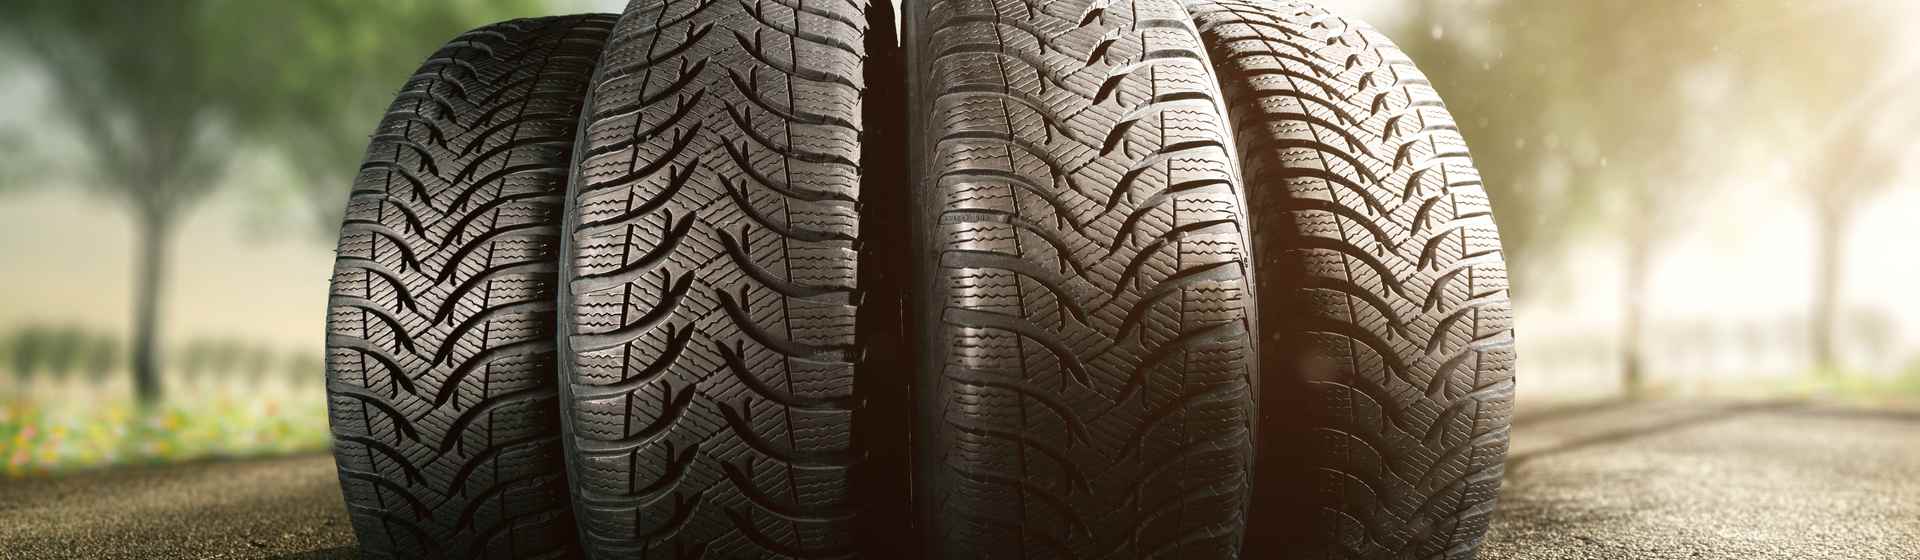 Continental ou Goodyear: qual marca tem os melhores pneus?